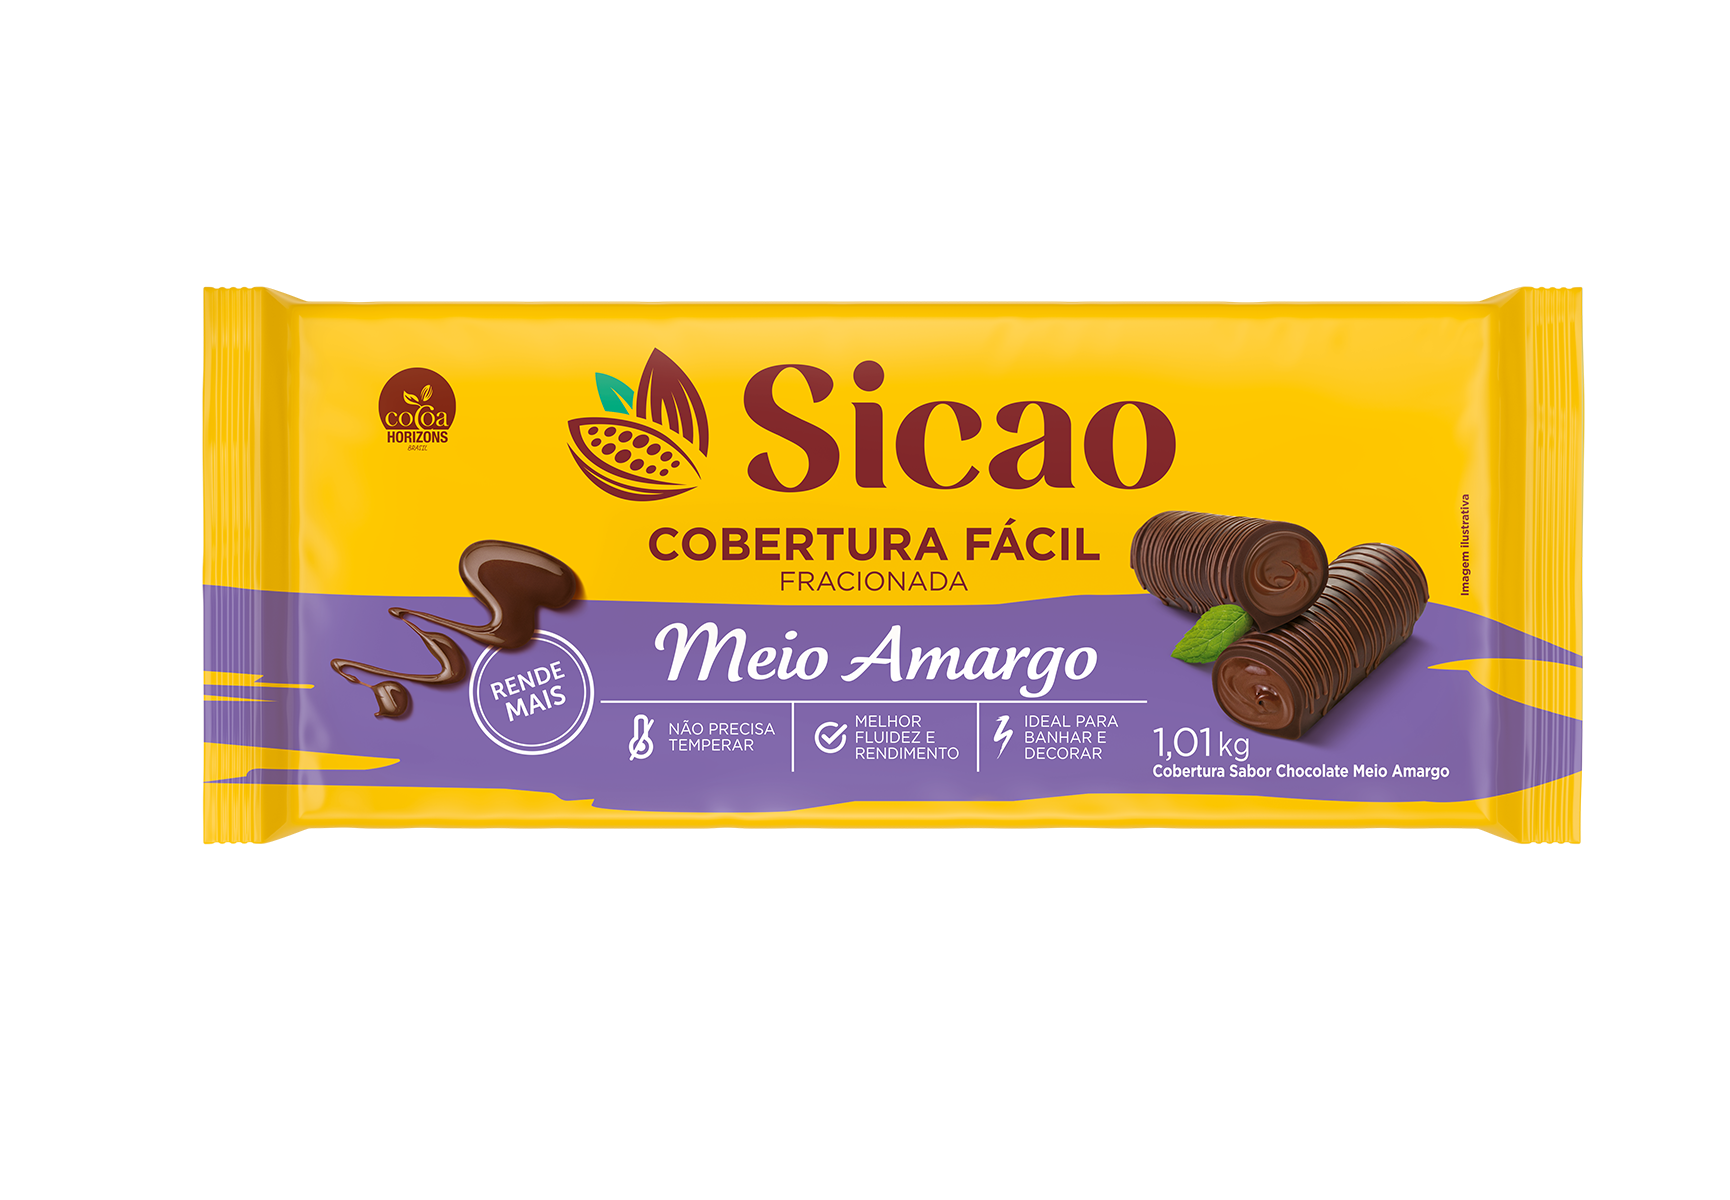 Cobertura Fracionada Sabor Chcolate Meio Amargo Sicao Fácil - Barra 1,01 kg (1)